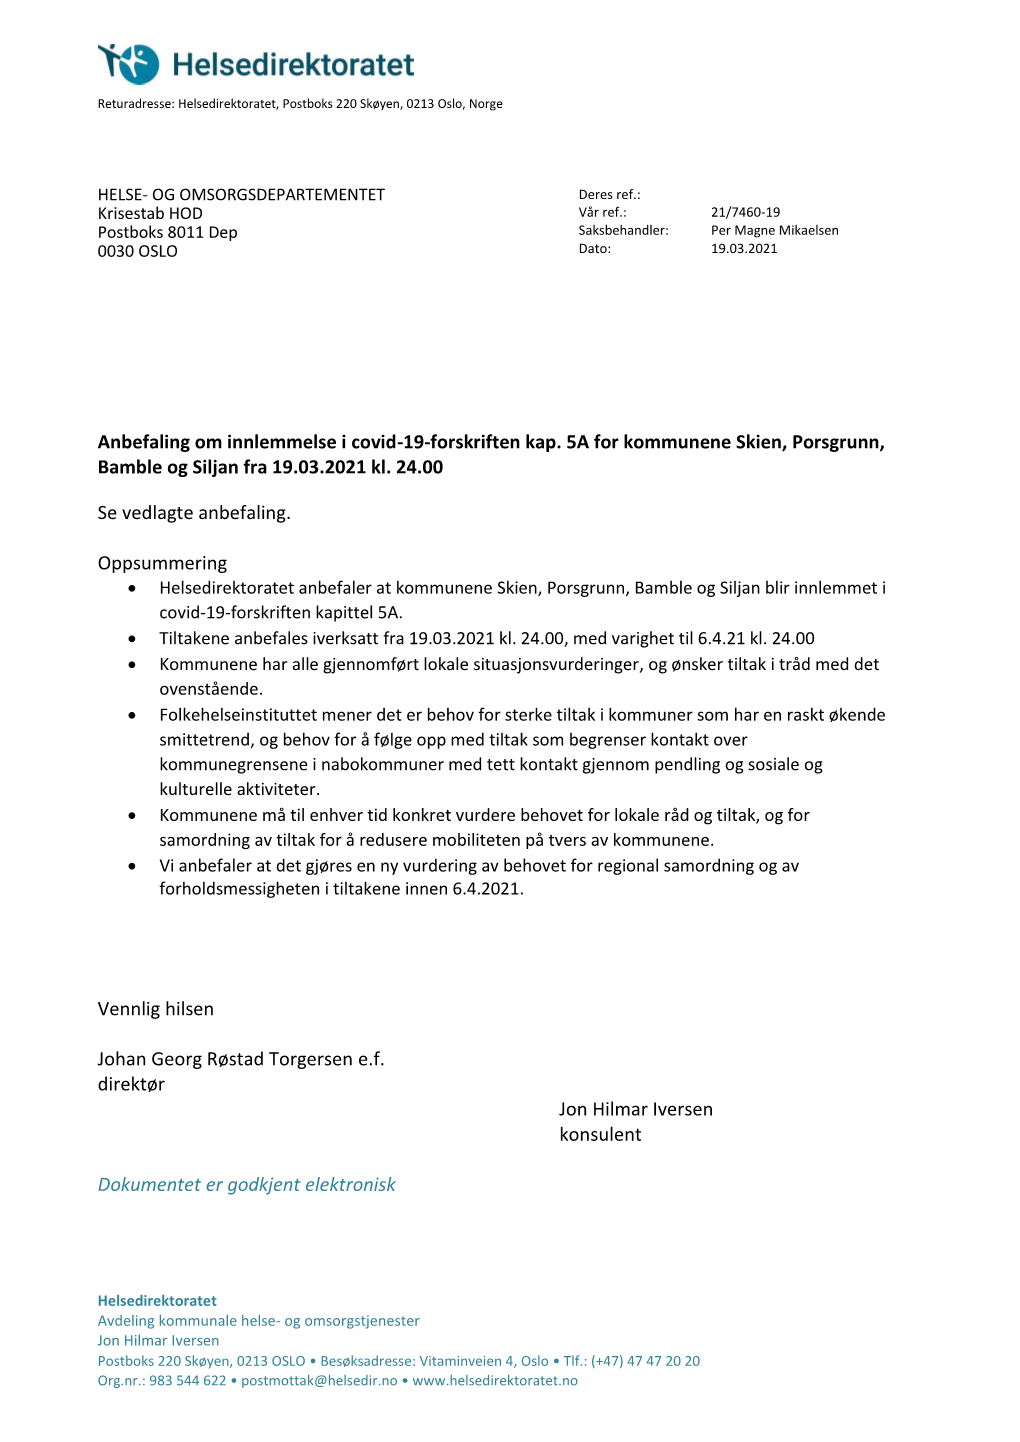 Anbefaling Om Innlemmelse I Covid-19-Forskriften Kap. 5A for Kommunene Skien, Porsgrunn, Bamble Og Siljan Fra 19.03.2021 Kl